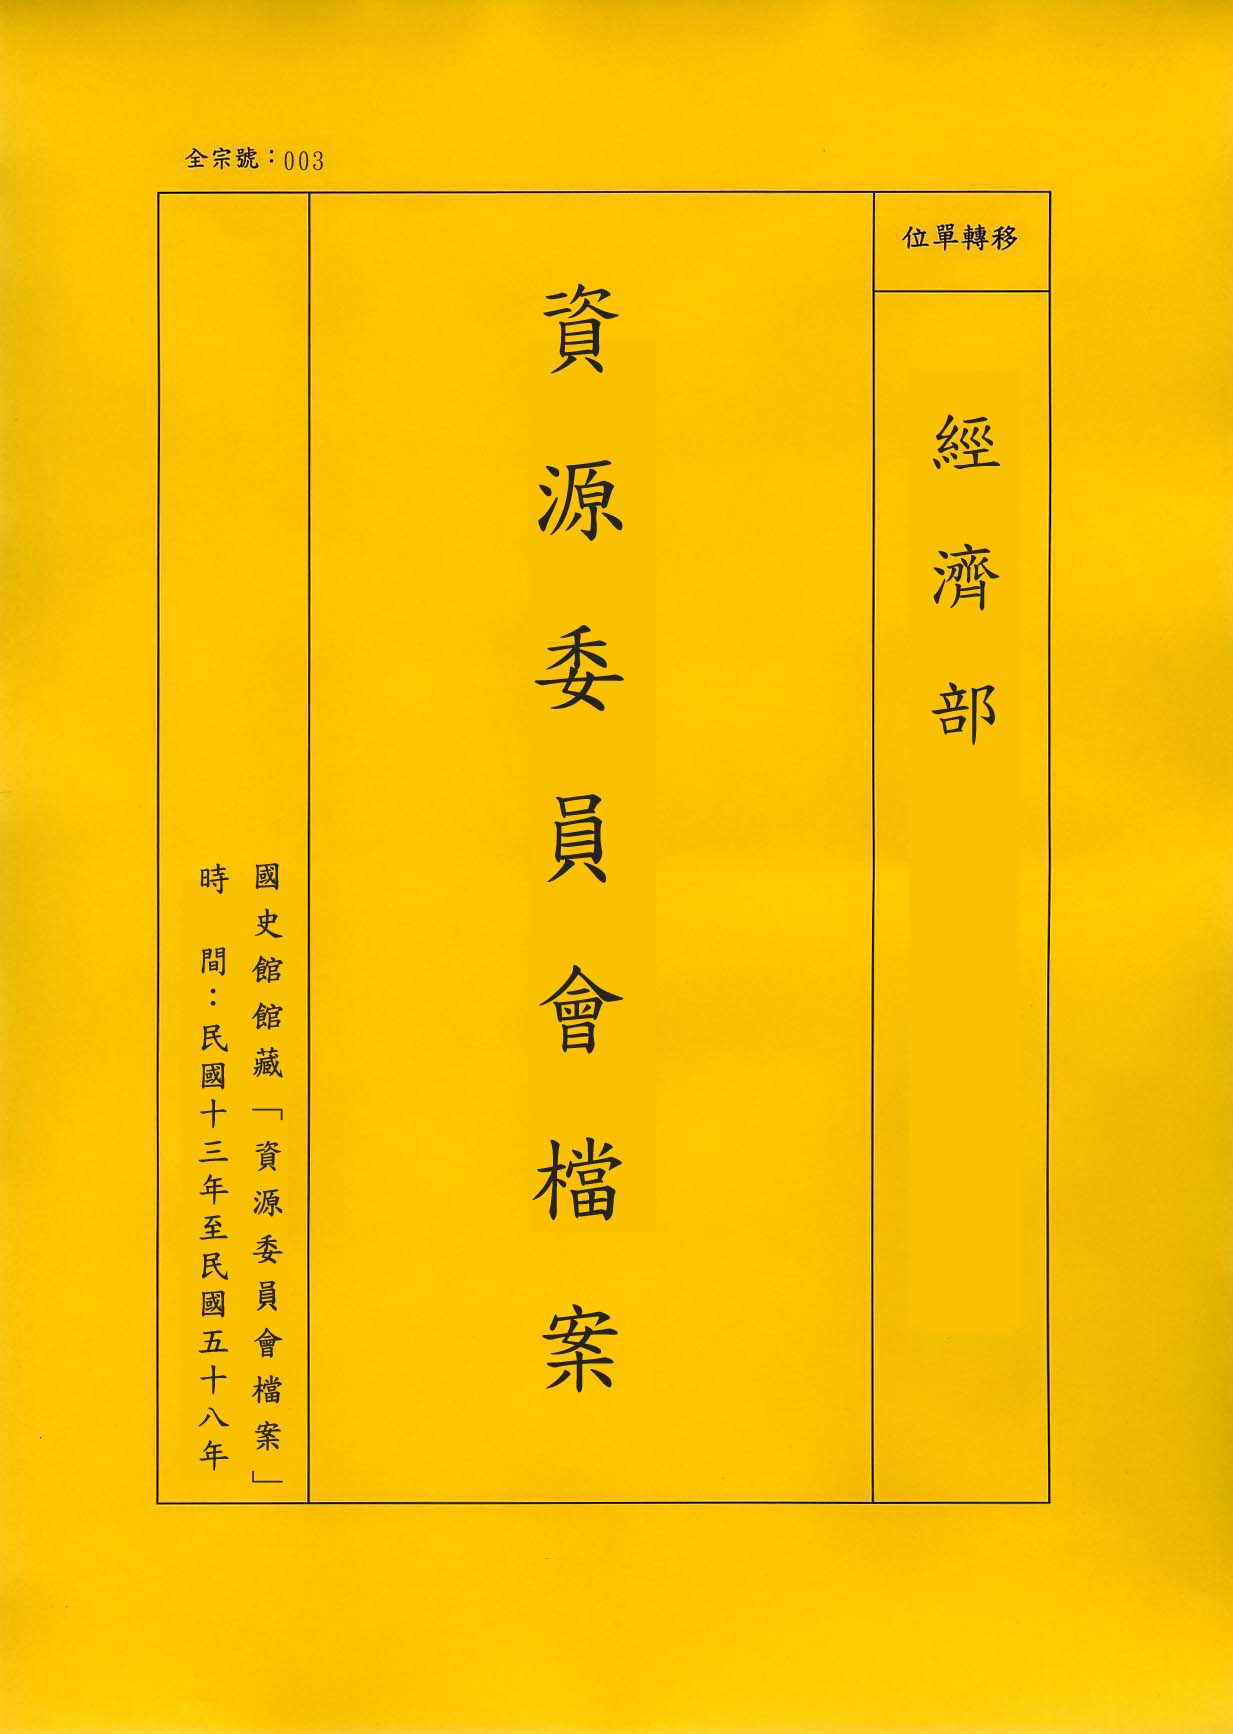 卷名:天津紙漿造紙公司三十五年度會計年報及各項表單(003-010403-0591)